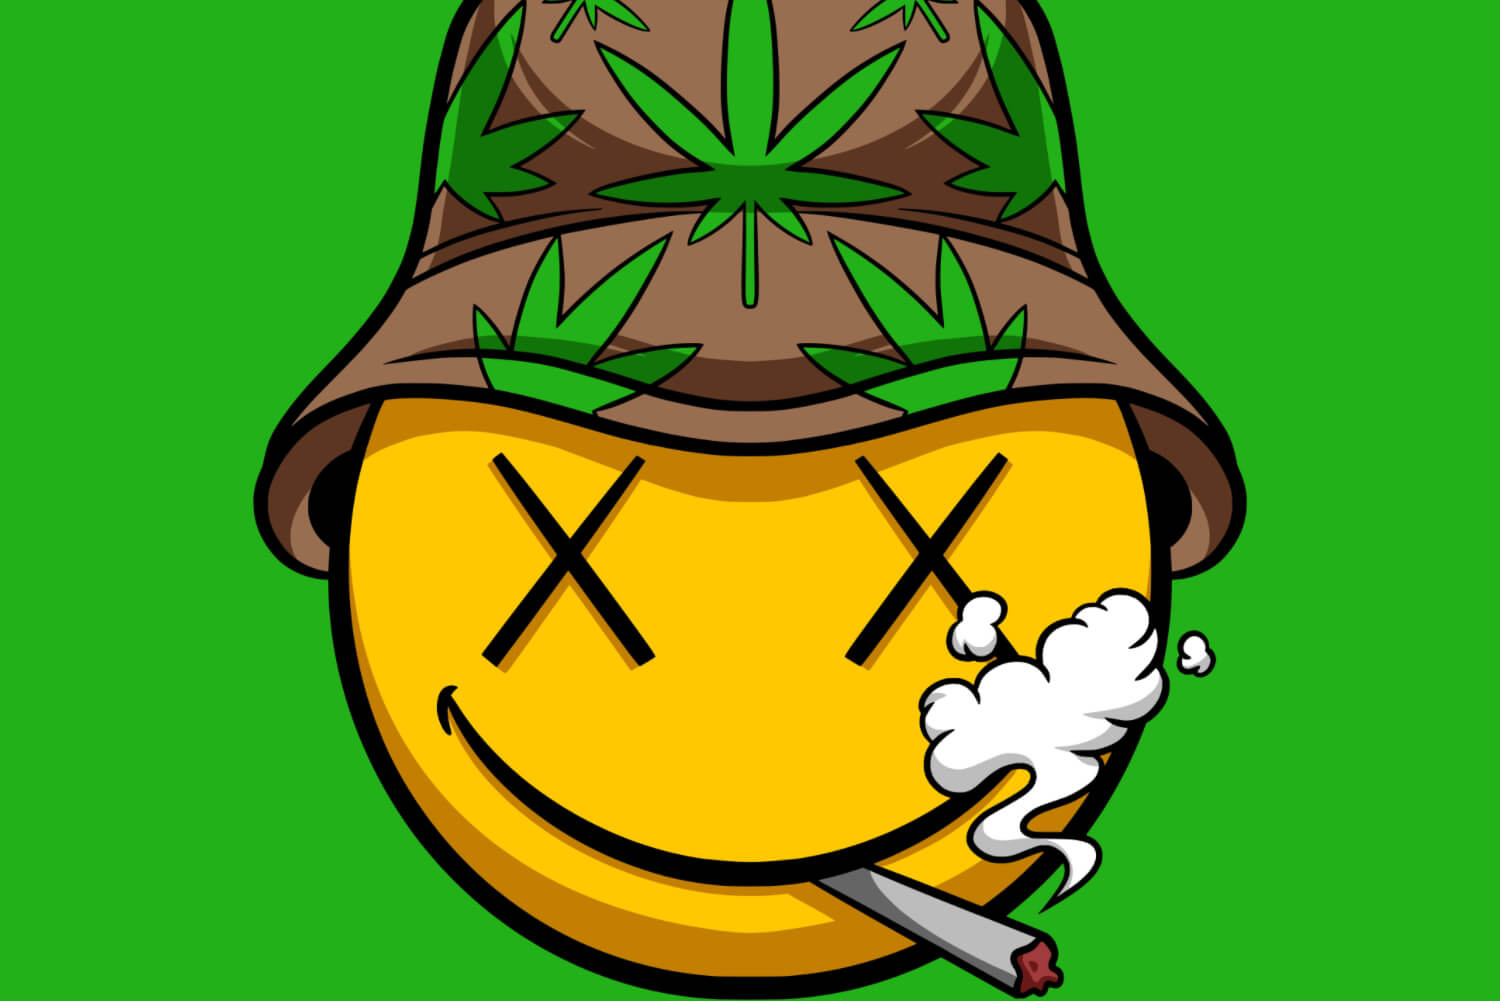 pac-man smoking weed